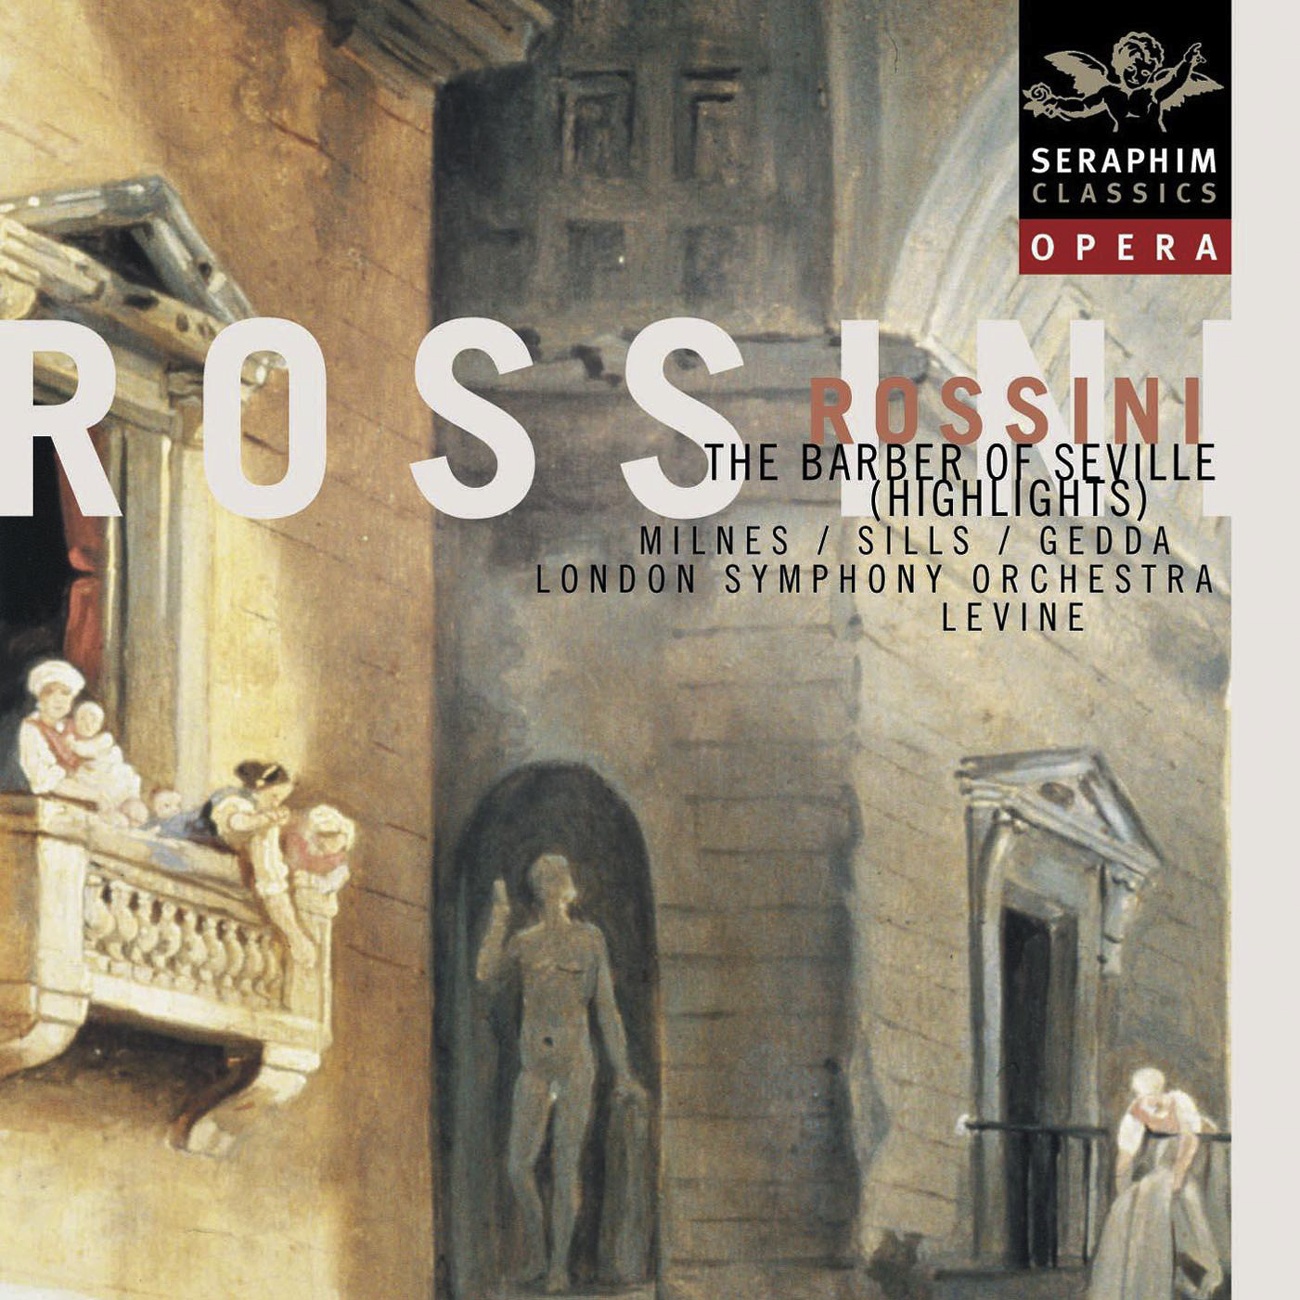 Il Barbiere di Siviglia (1996 Digital Remaster): Piano, pianissimo, senza parlar (Fiorello/Coro/Conte)